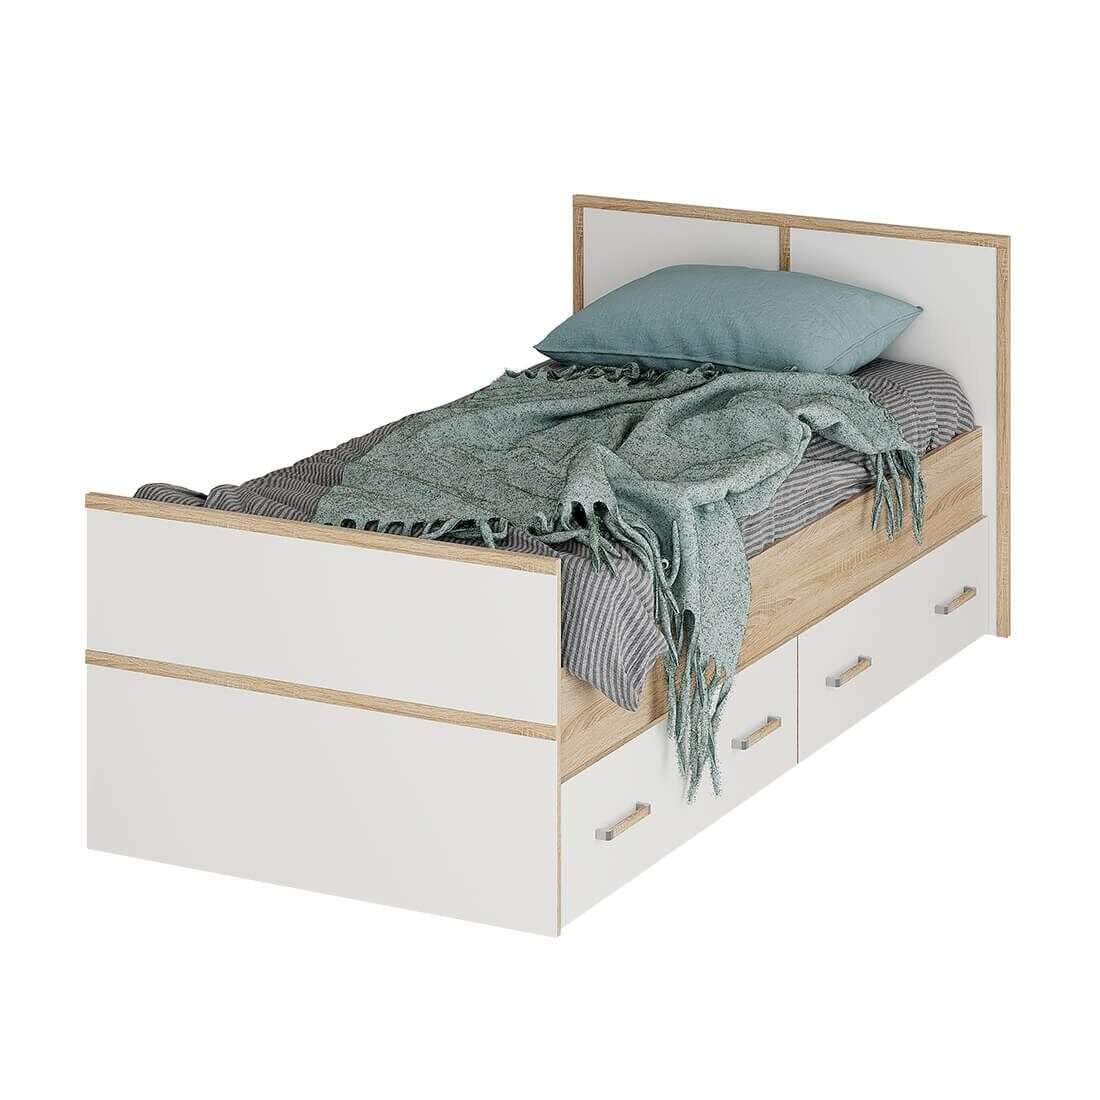 Двуспальная кровать сакура с ящиками